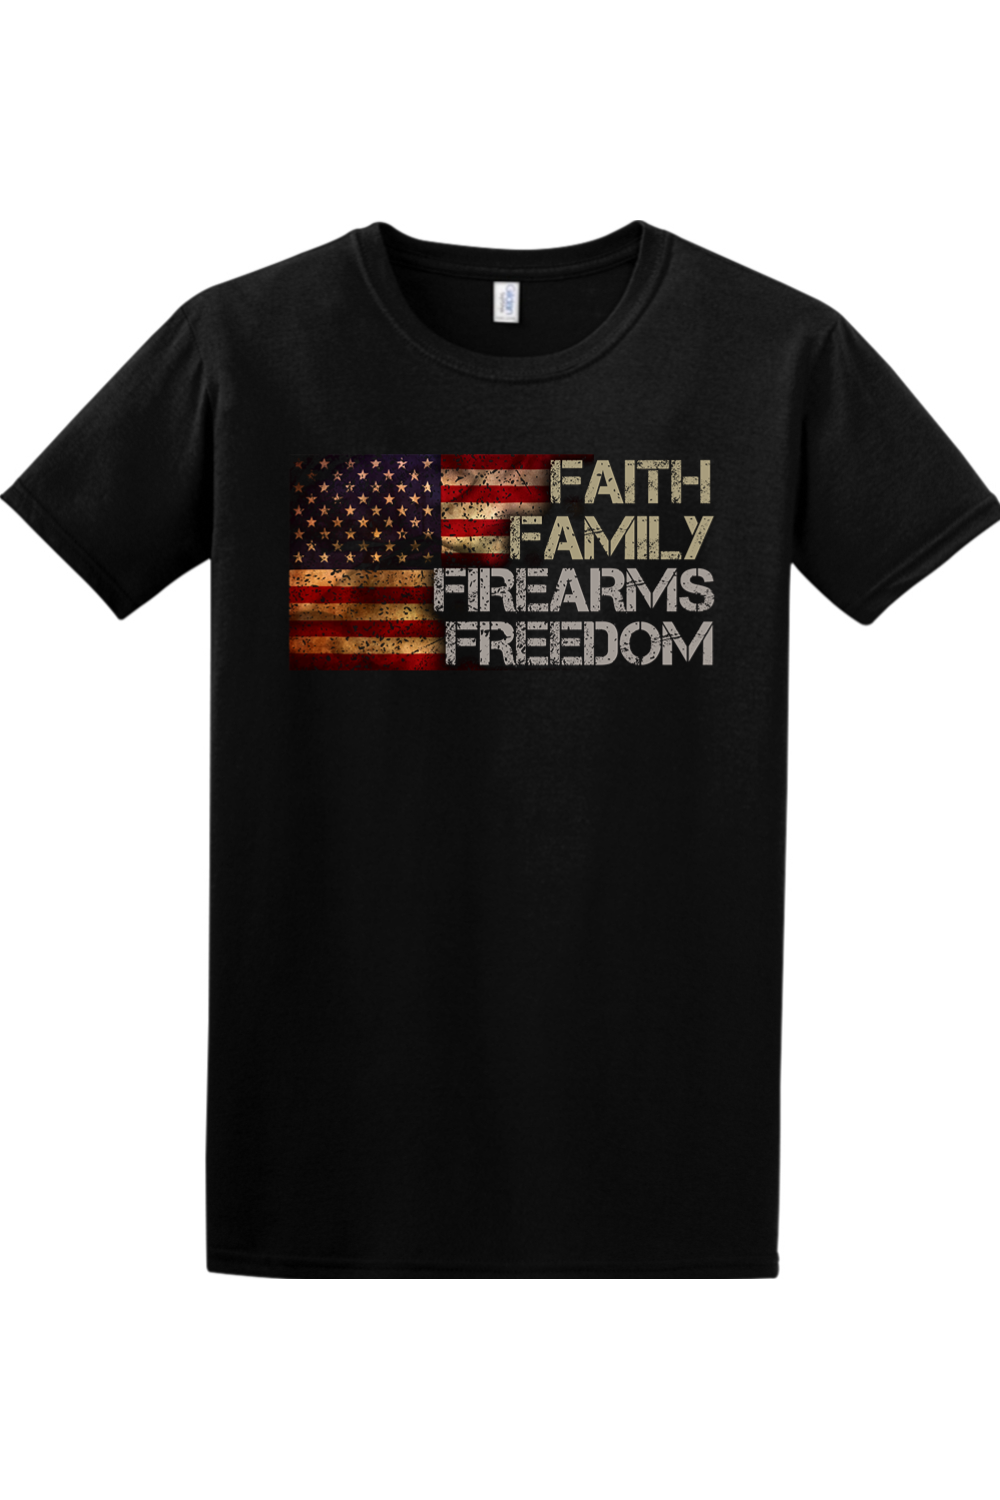 Faith. Family. Firearms. Freedom